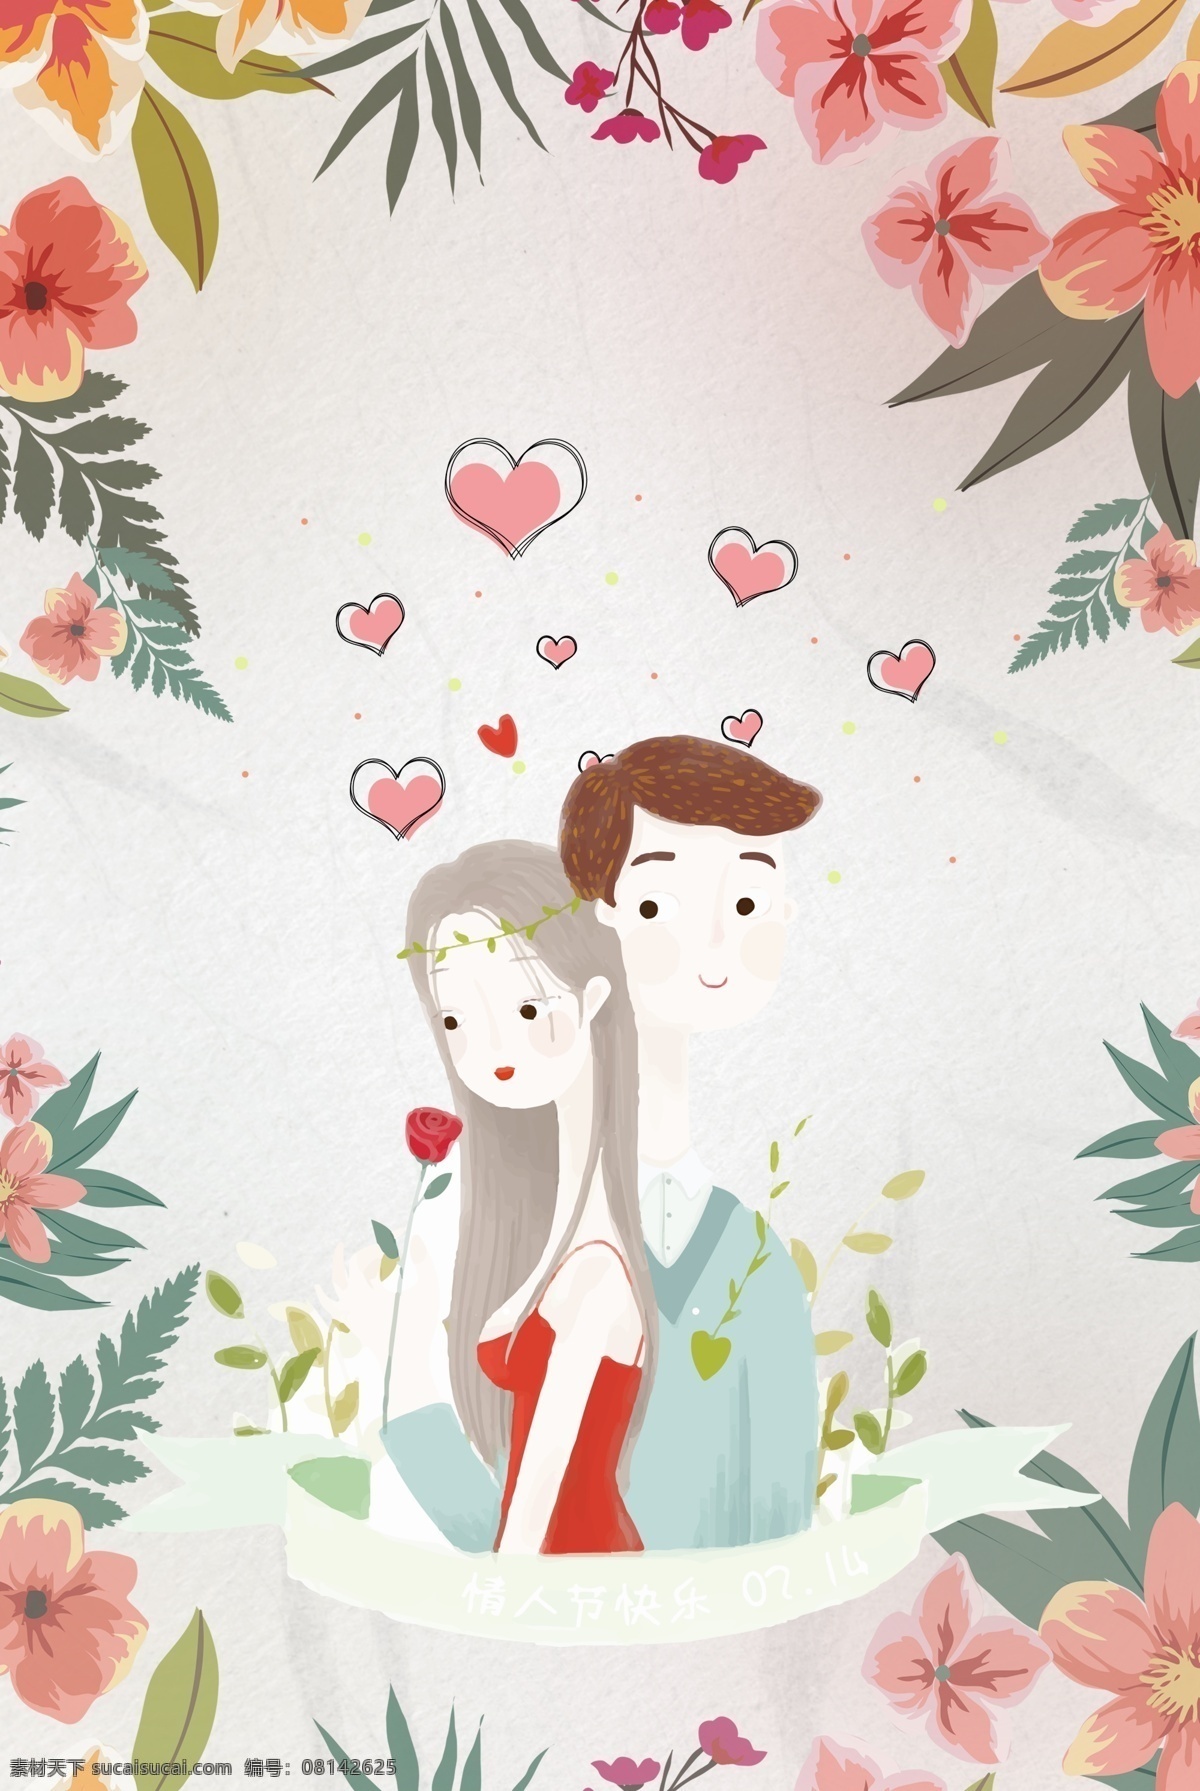 粉色 花卉 浪漫 520 情人节 海报 背景 文艺 清新 卡通 手绘 质感 纹理 爱心